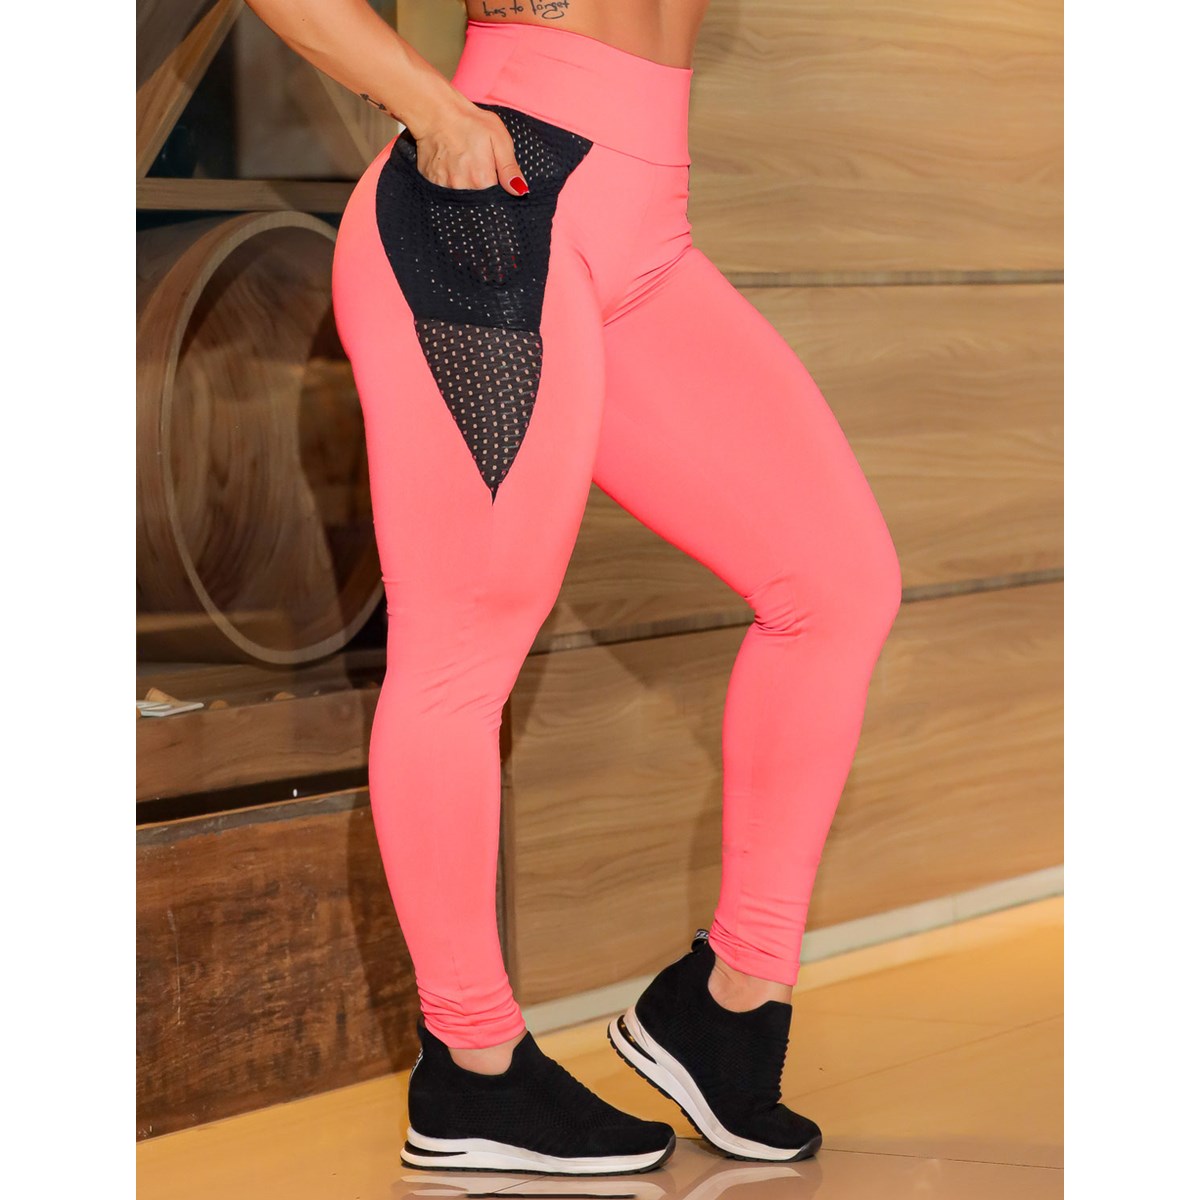 Calça Empina Bumbum Rosa Neon com Bolsos de Tela de Poliamida | Ref: 4.4.4296-3901